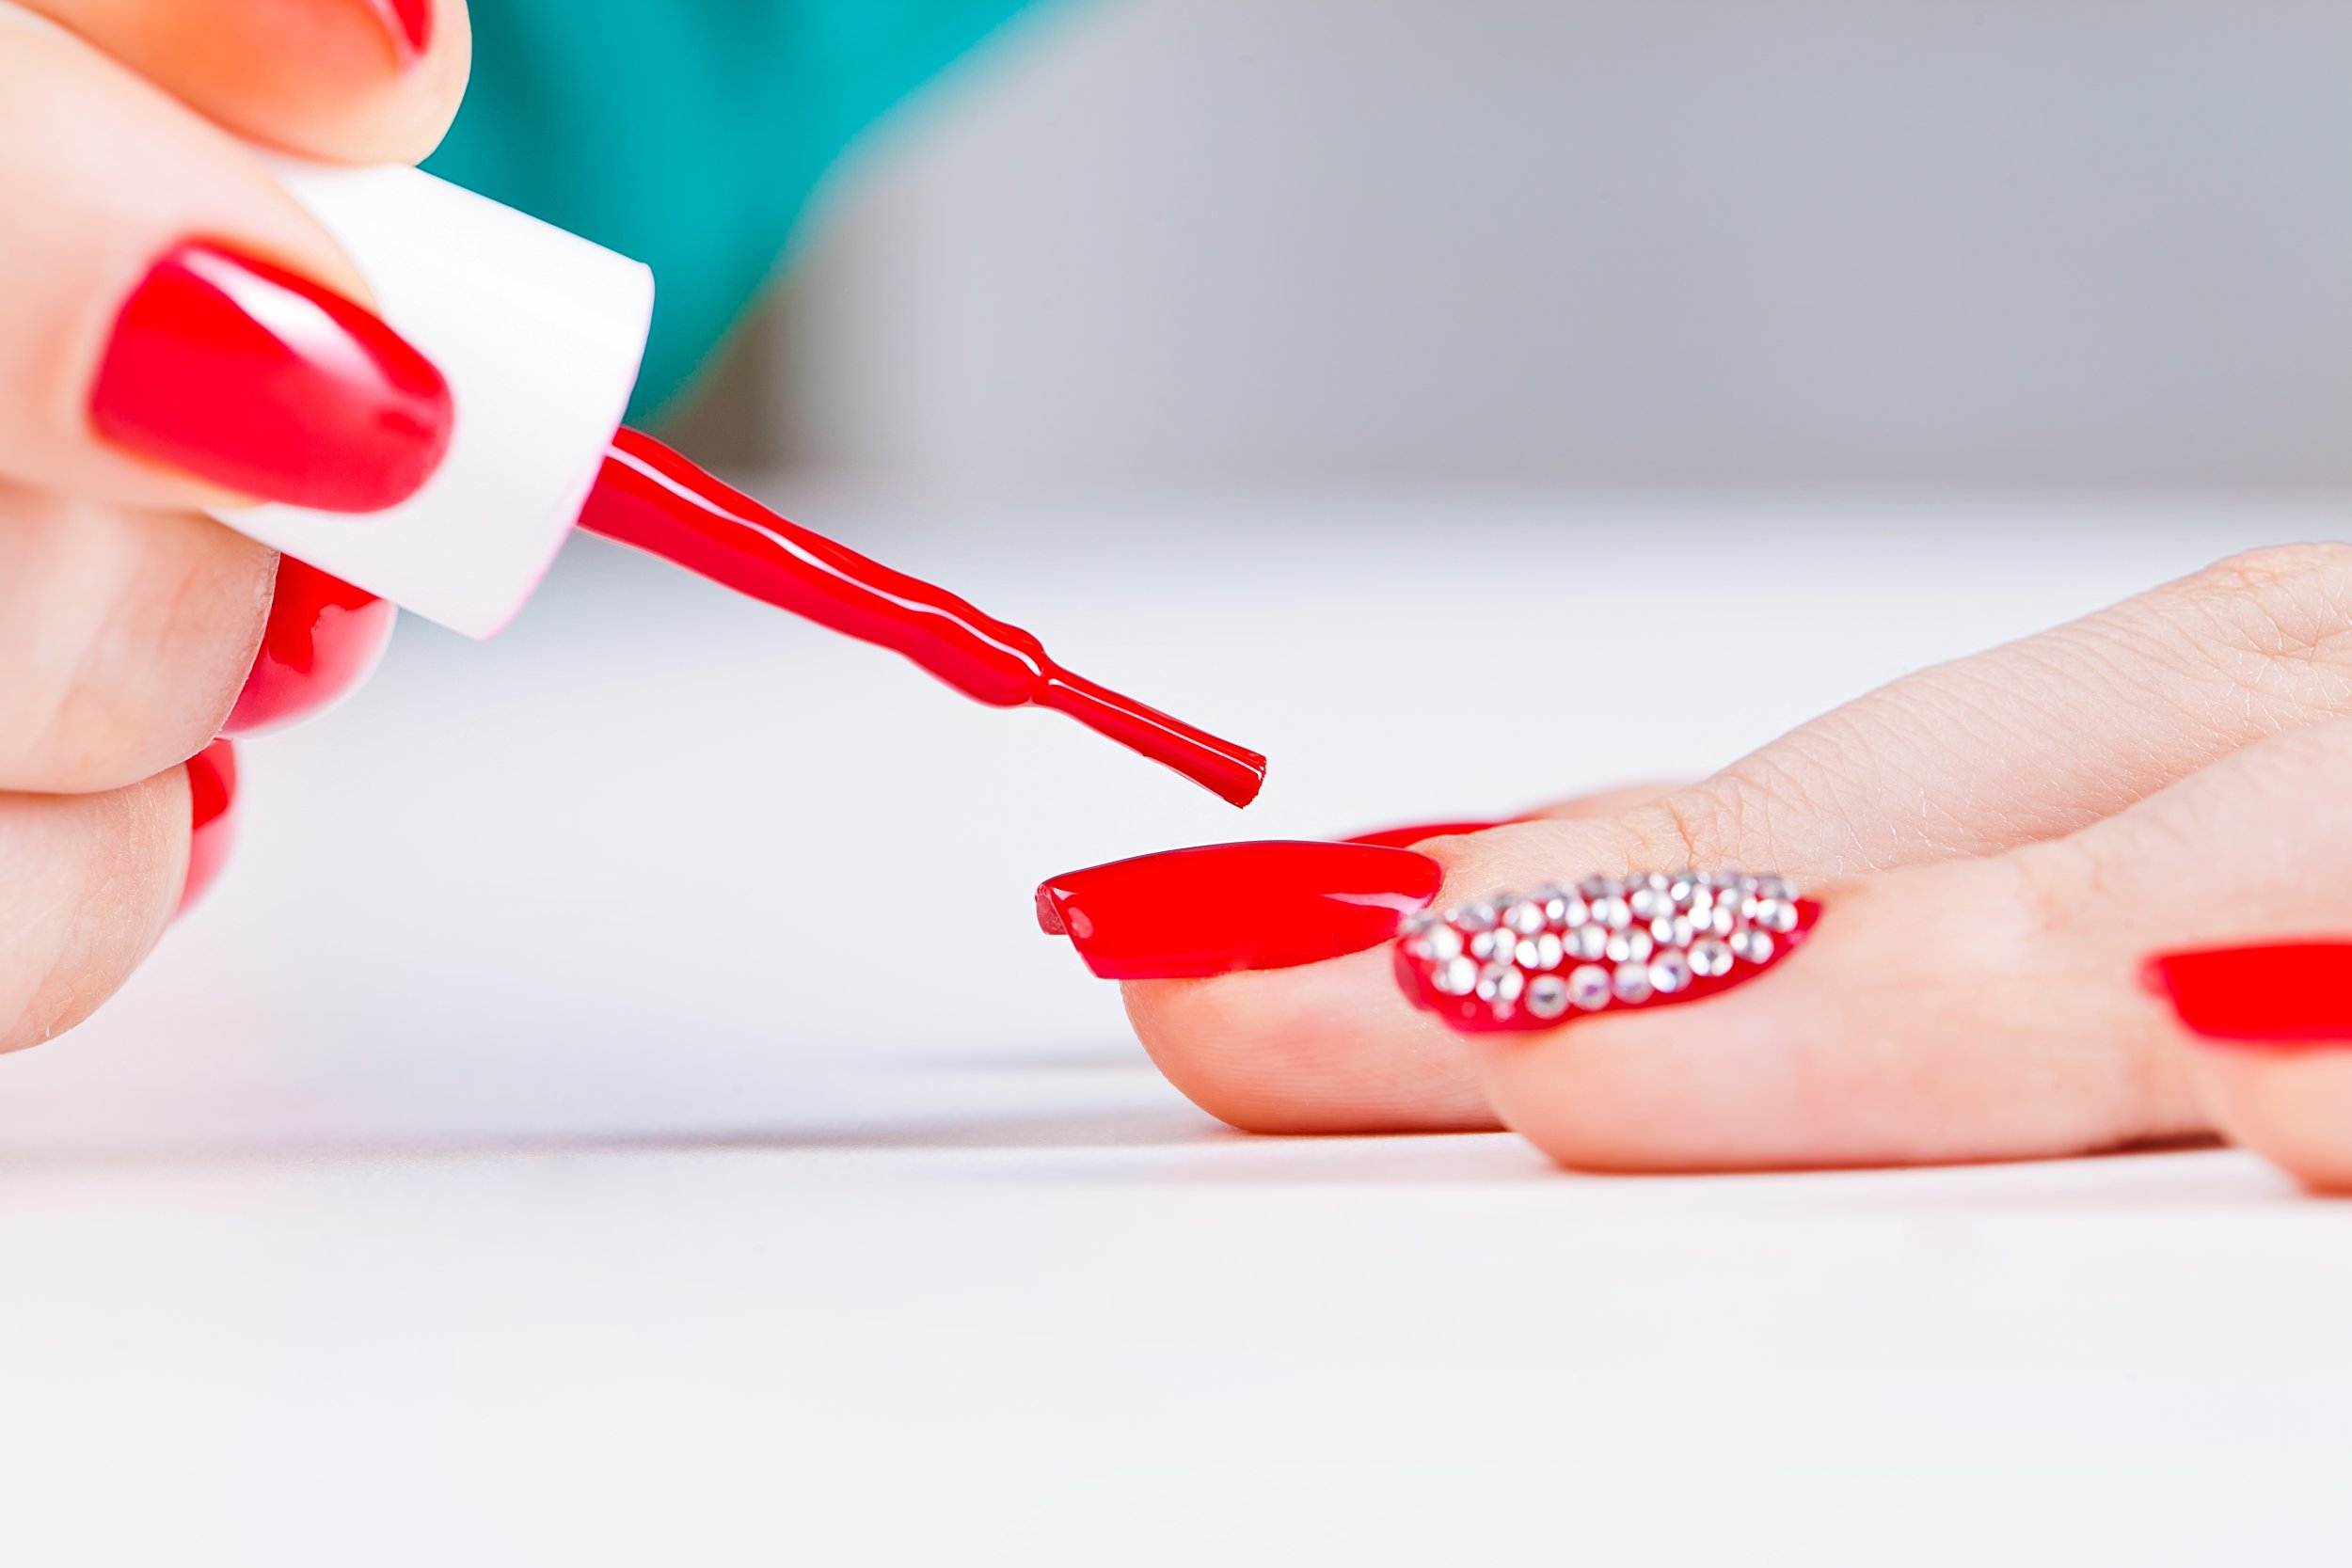 Can Nurses Have Long Nails and Wear Nail Polish? - Nurse Money Talk